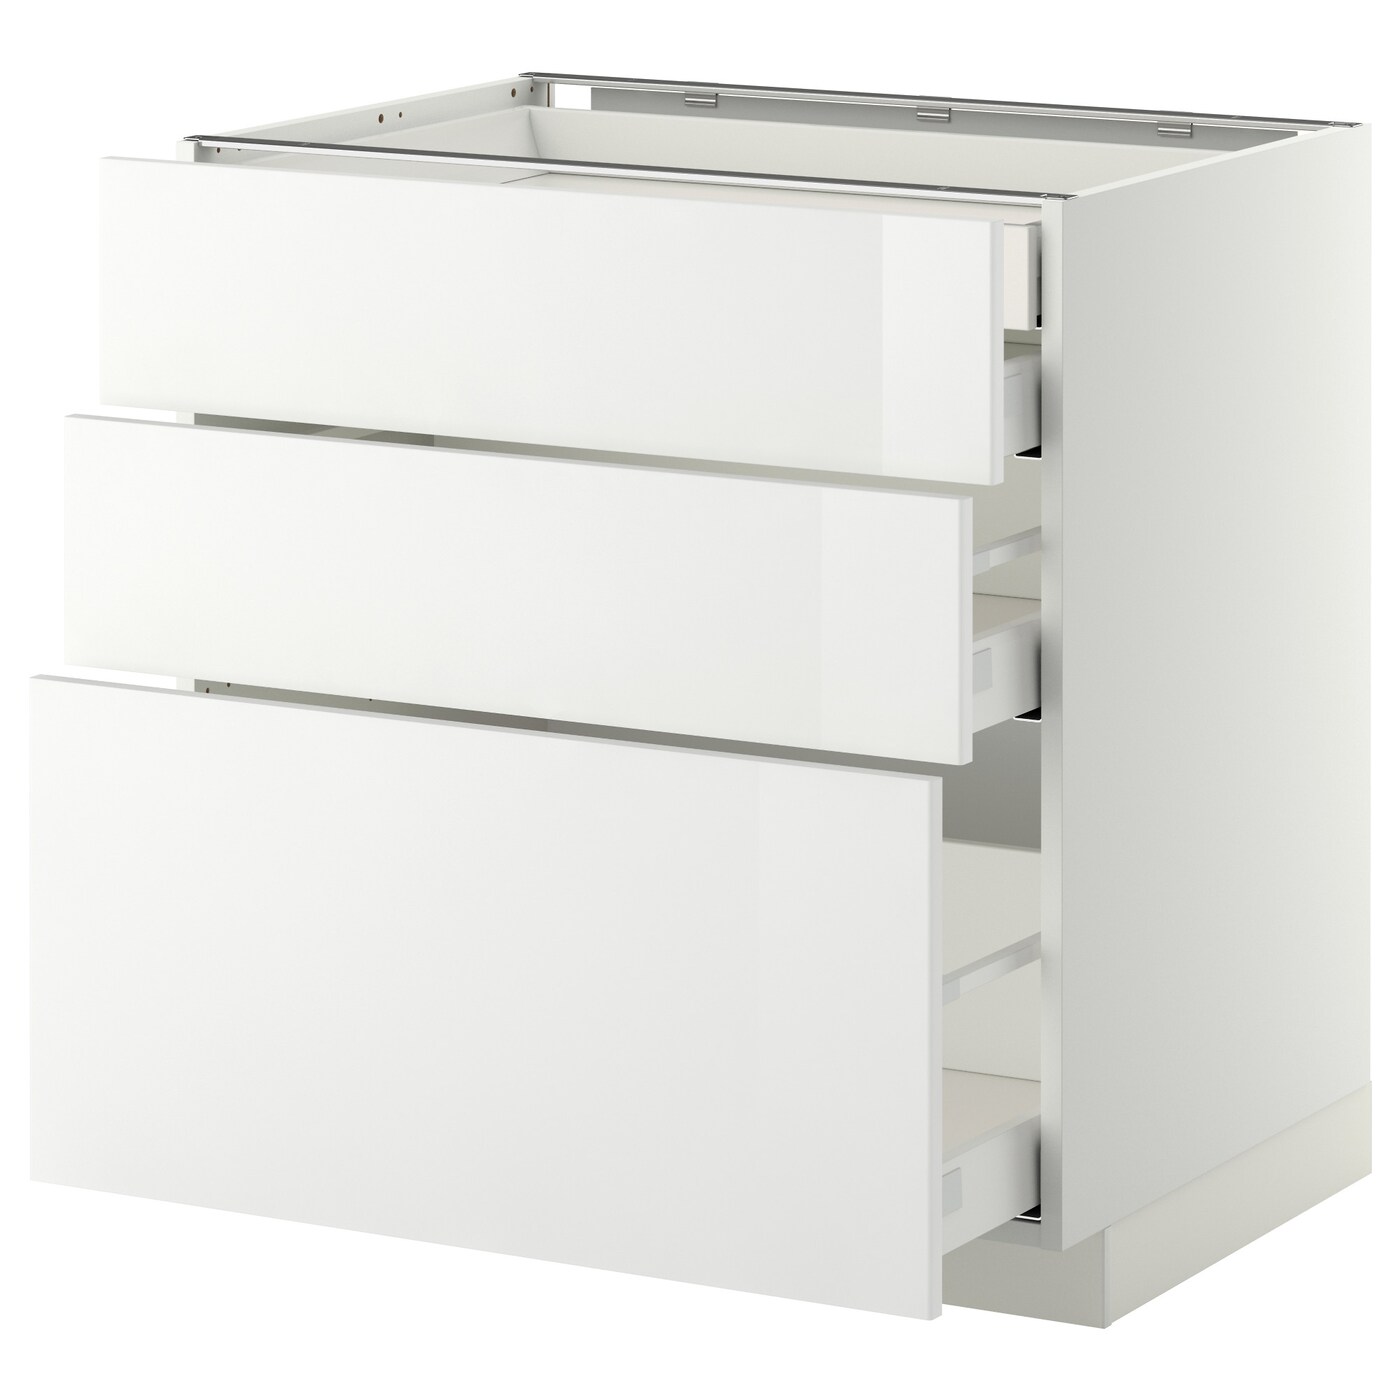 Напольный шкаф  - IKEA METOD MAXIMERA, 88x61,8x80см, белый, МЕТОД МАКСИМЕРА ИКЕА